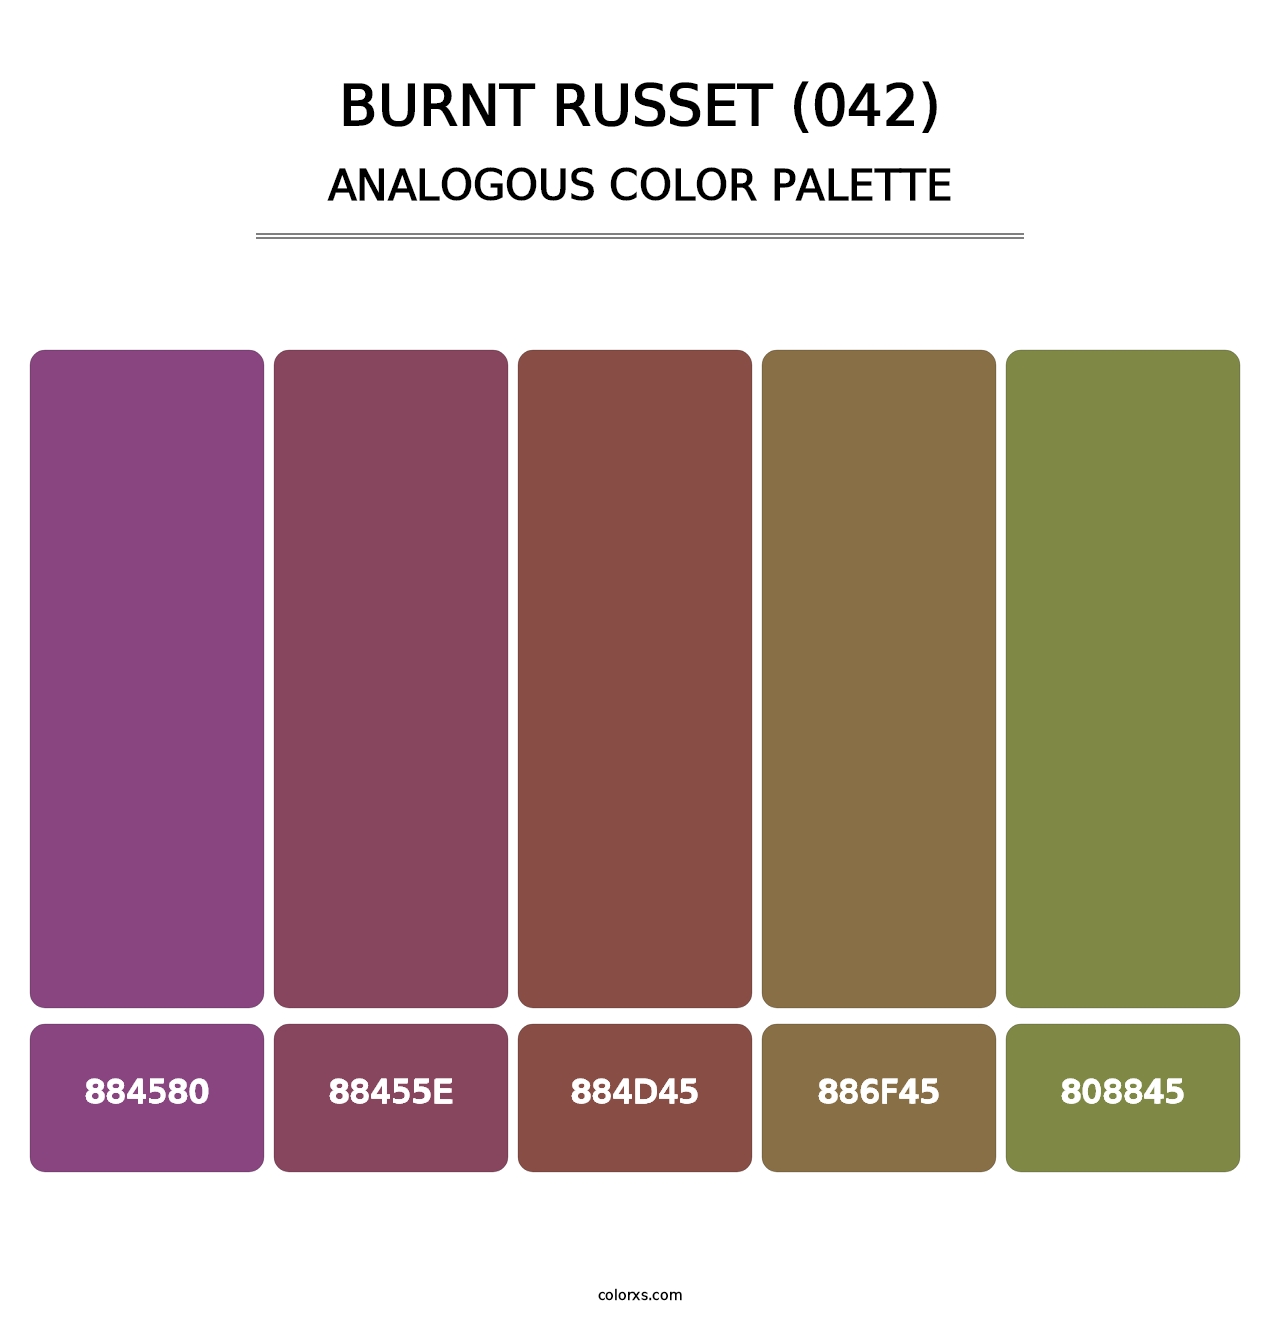 Burnt Russet (042) - Analogous Color Palette